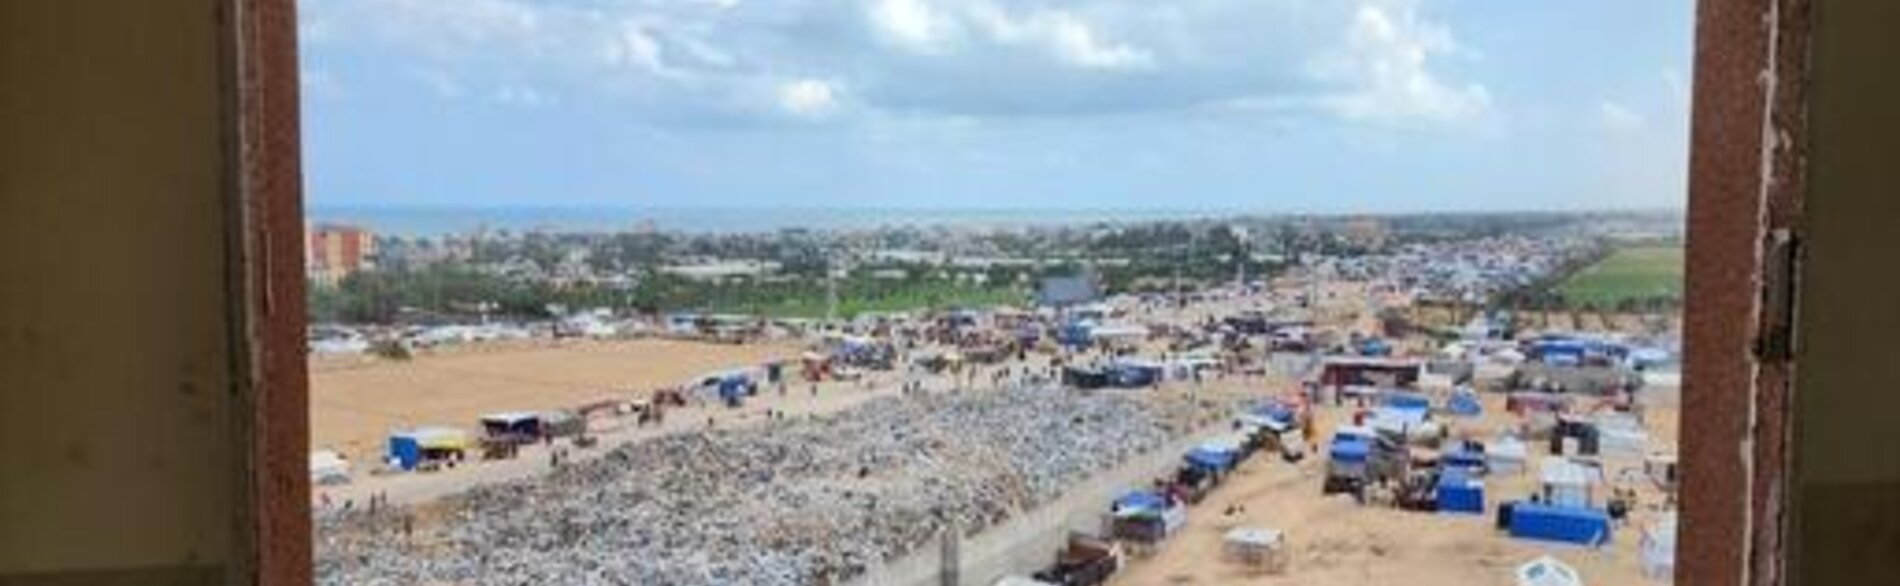 أكوام من النفايات بجانب خيام النازحين في رفح، جنوب قطاع غزة. تصوير: اليونيسف، إياد البابا 